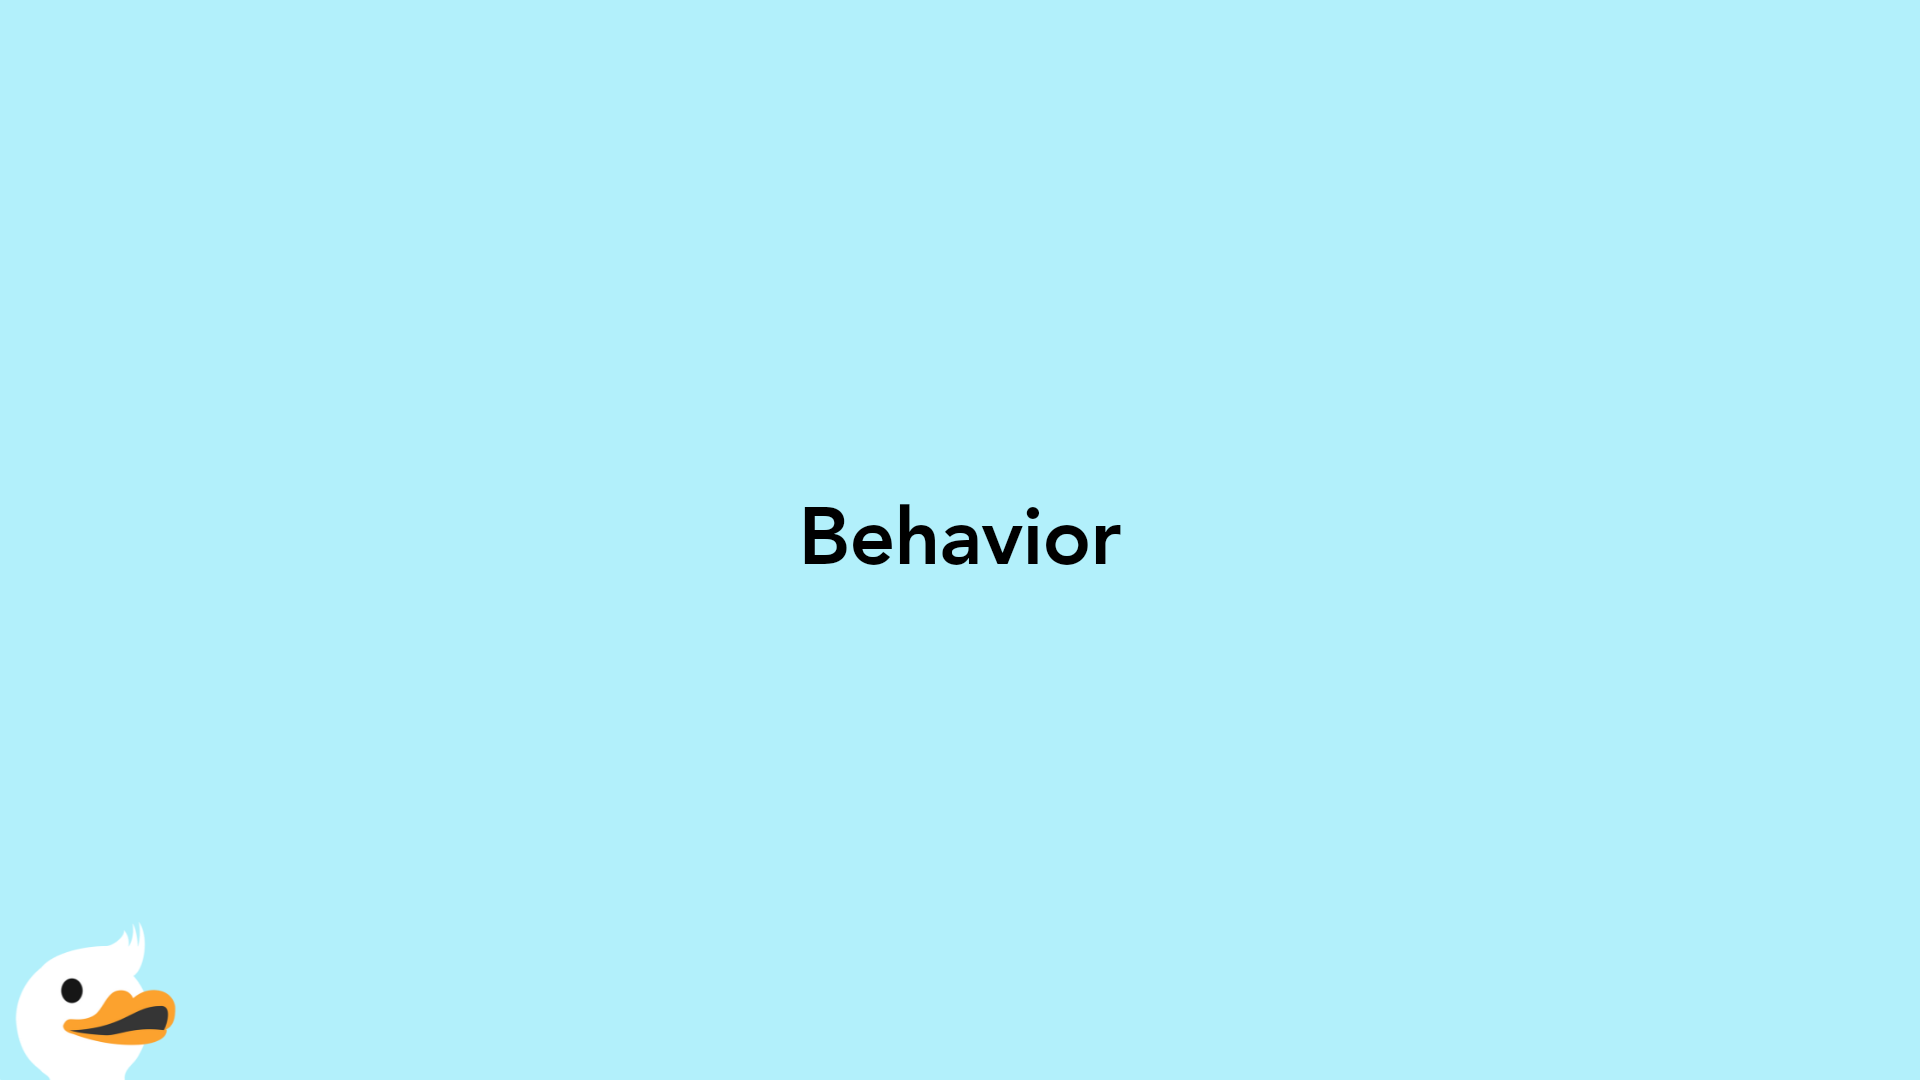 Behavior